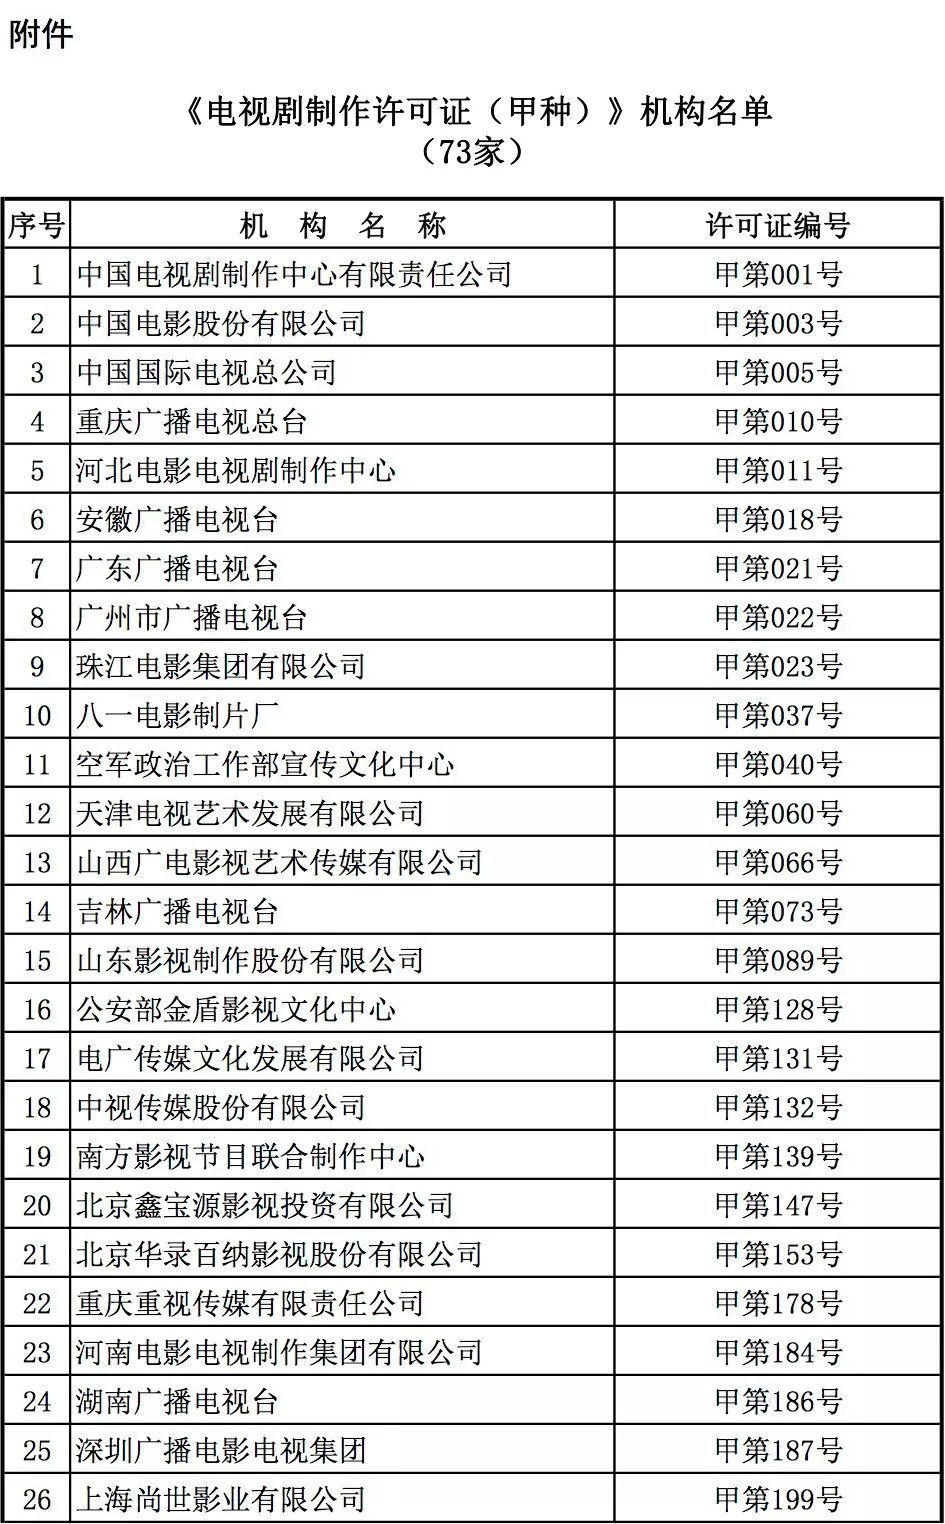 广电总局公布2019-2021年度《电视剧制作许可证(甲种)》机构名单